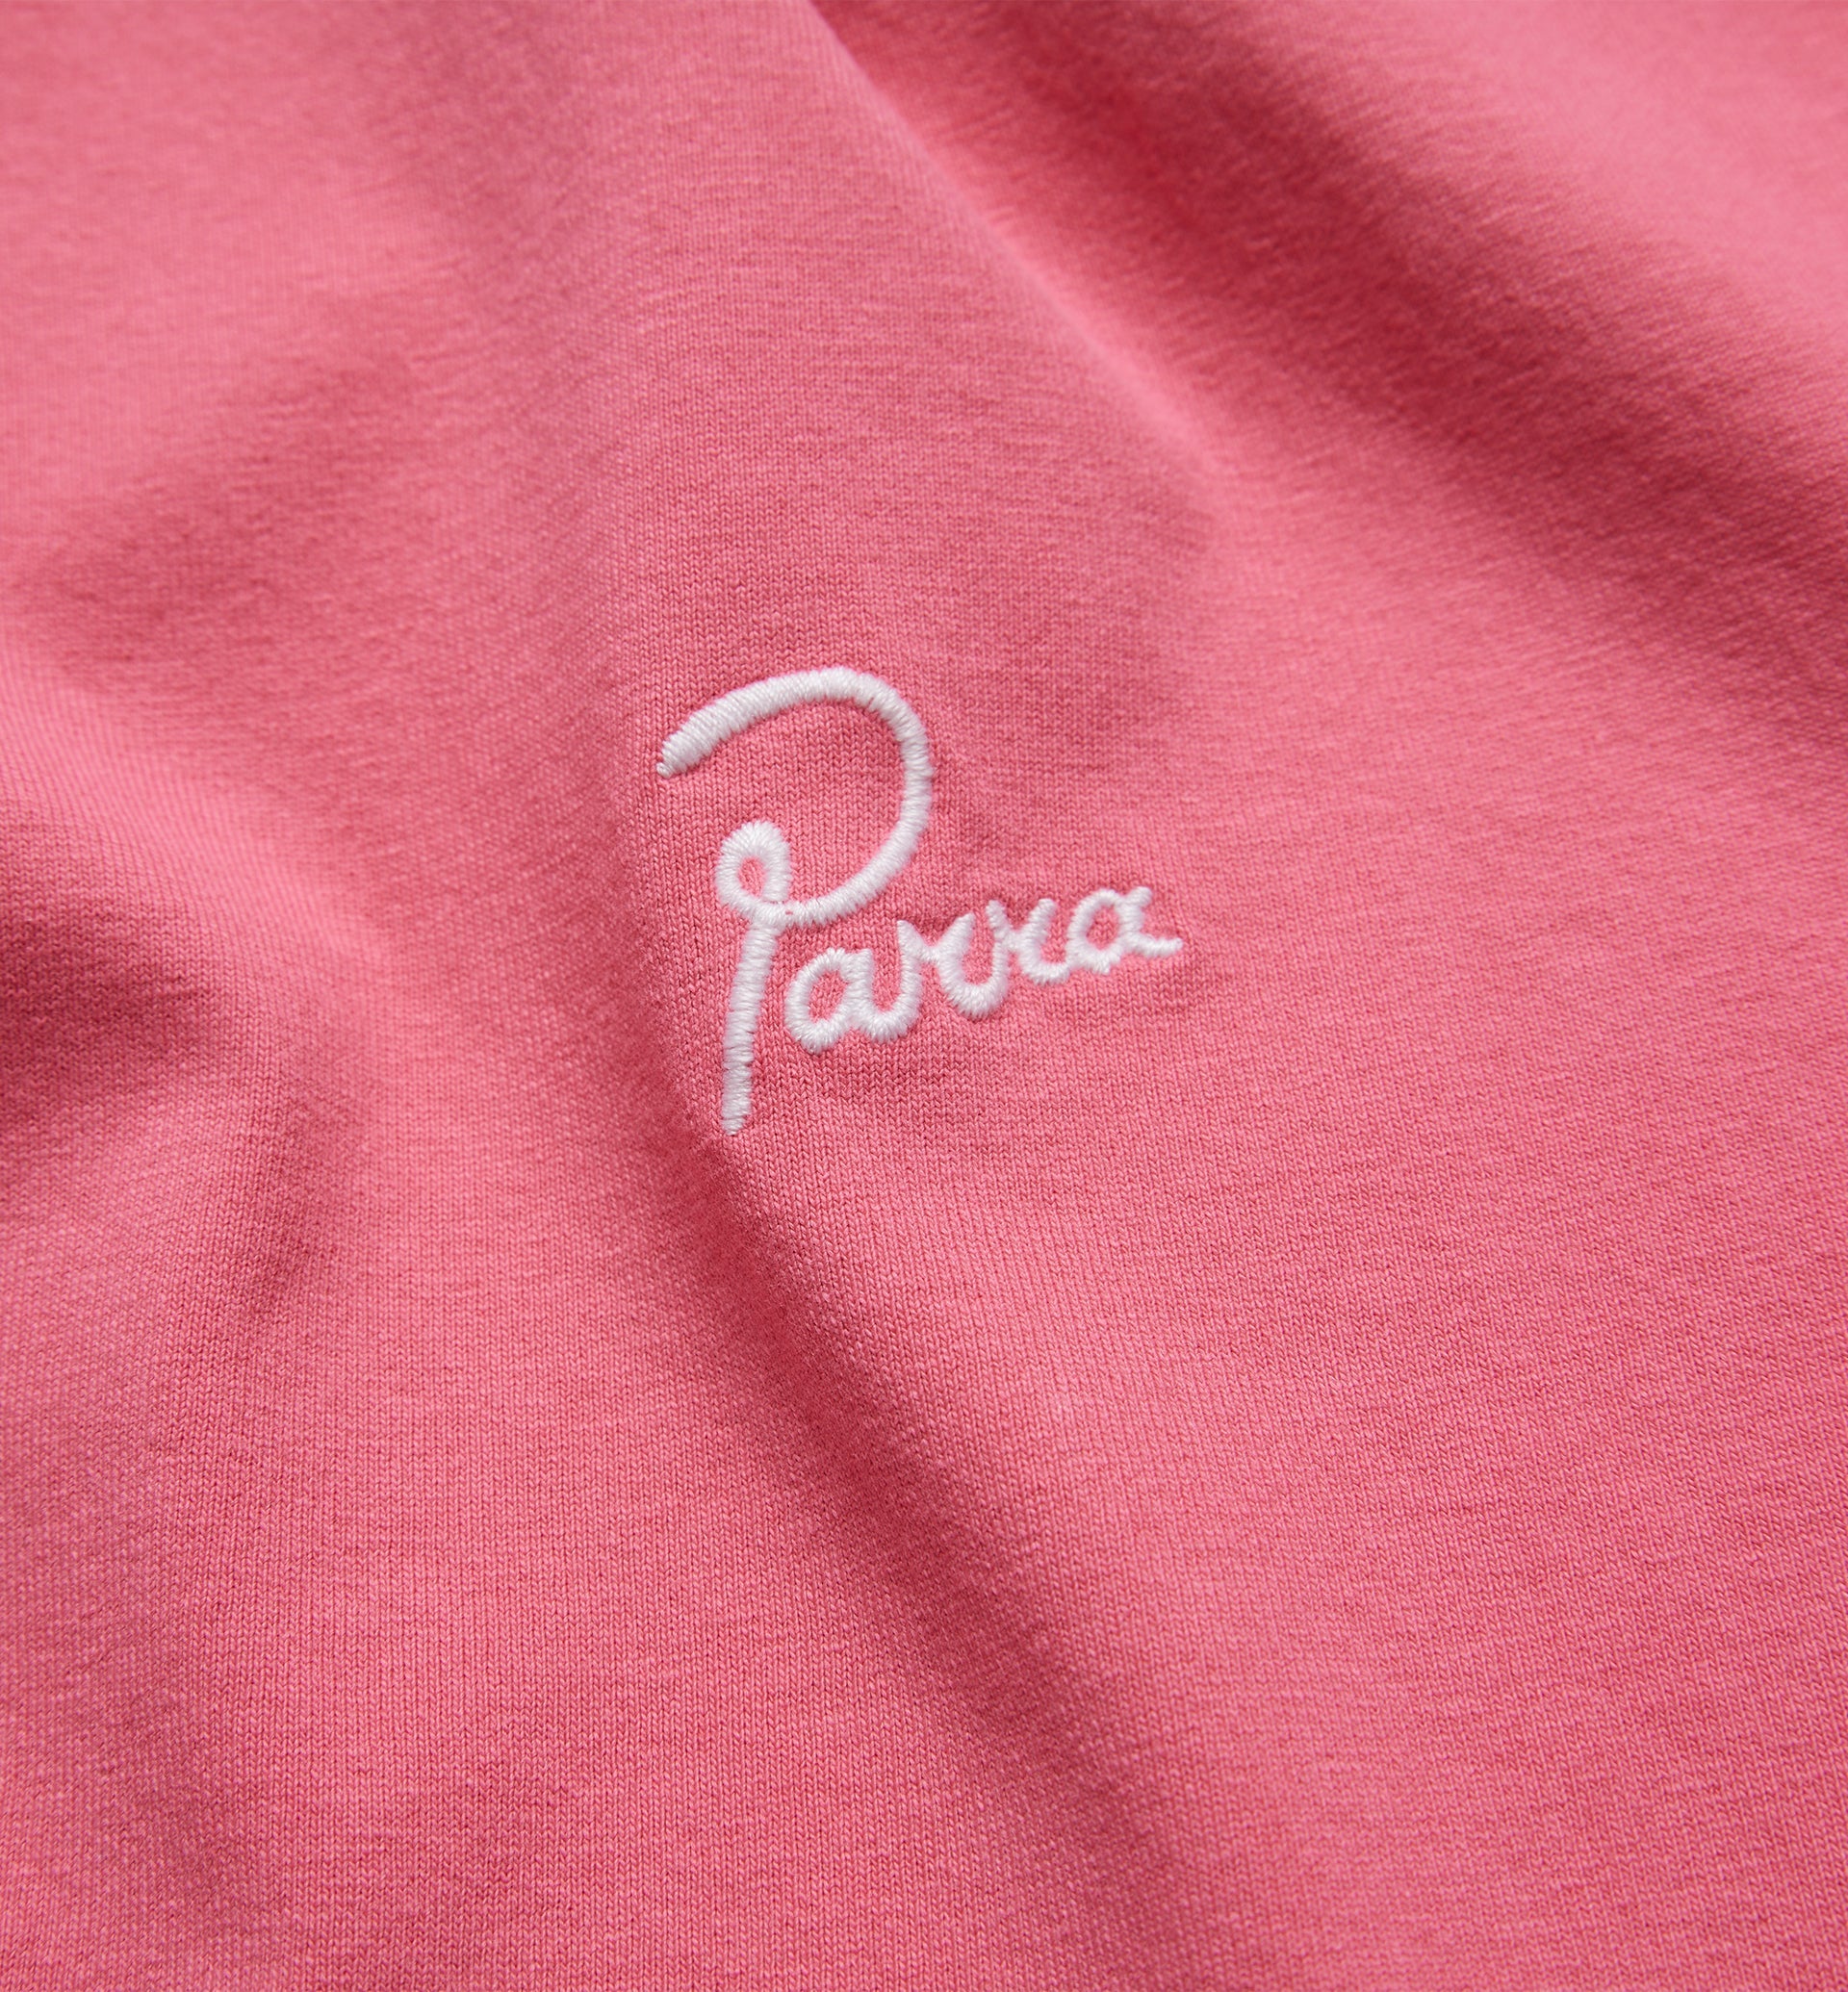 Parra - classic logo t-shirt